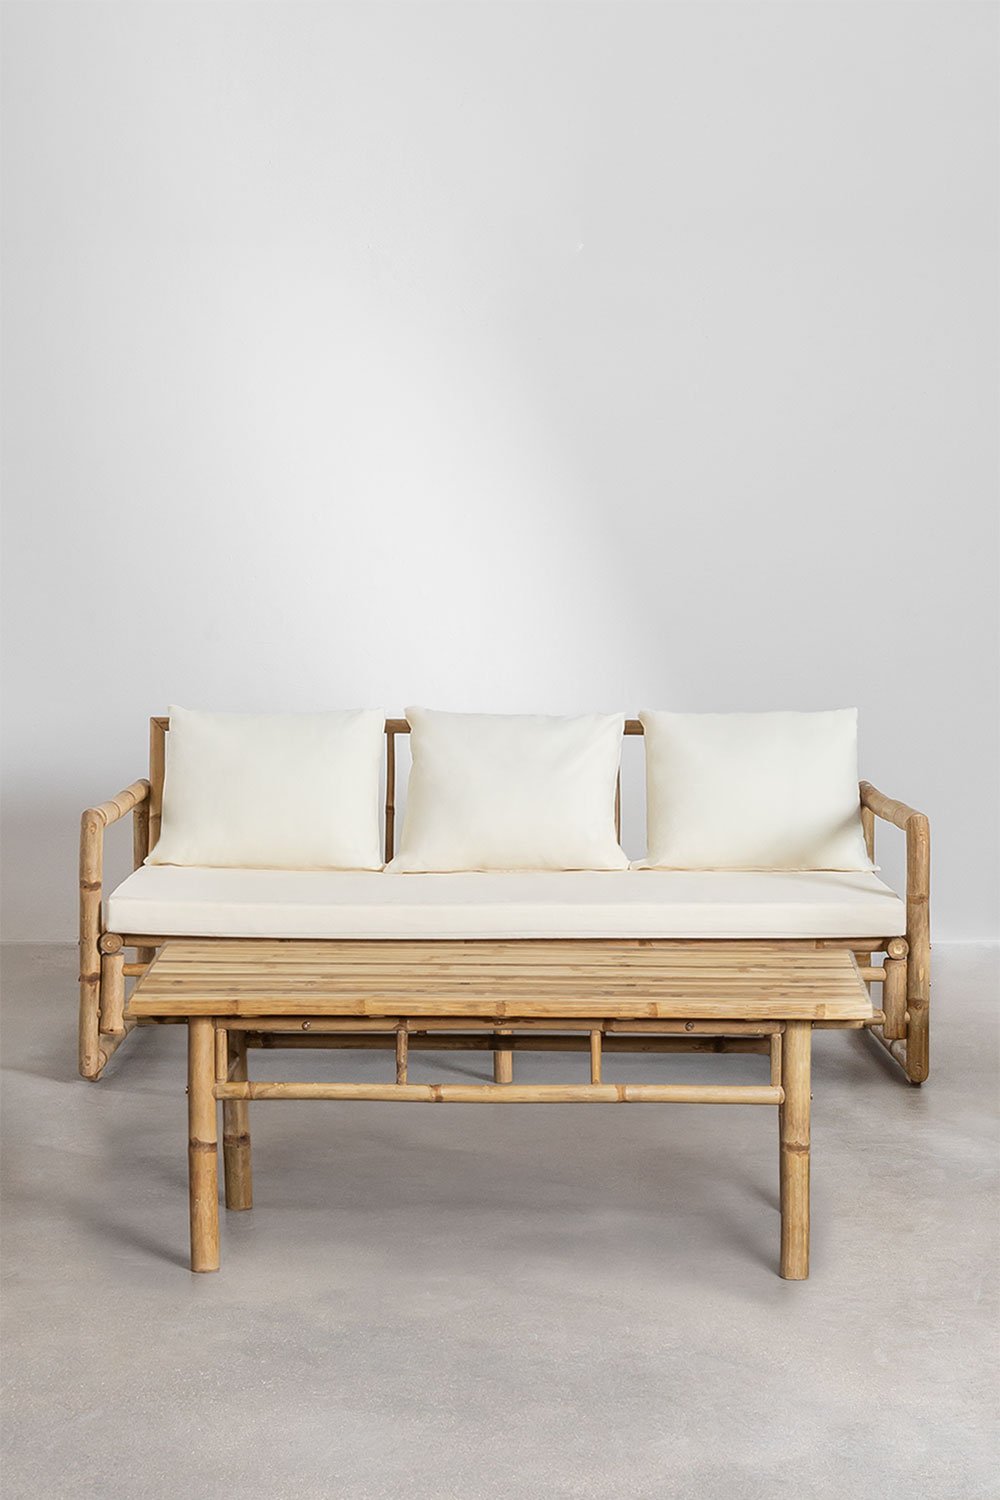 Tuinset van 3-zitsbank en salontafel (120x60 cm) in Livayna Bamboe, galerij beeld 1